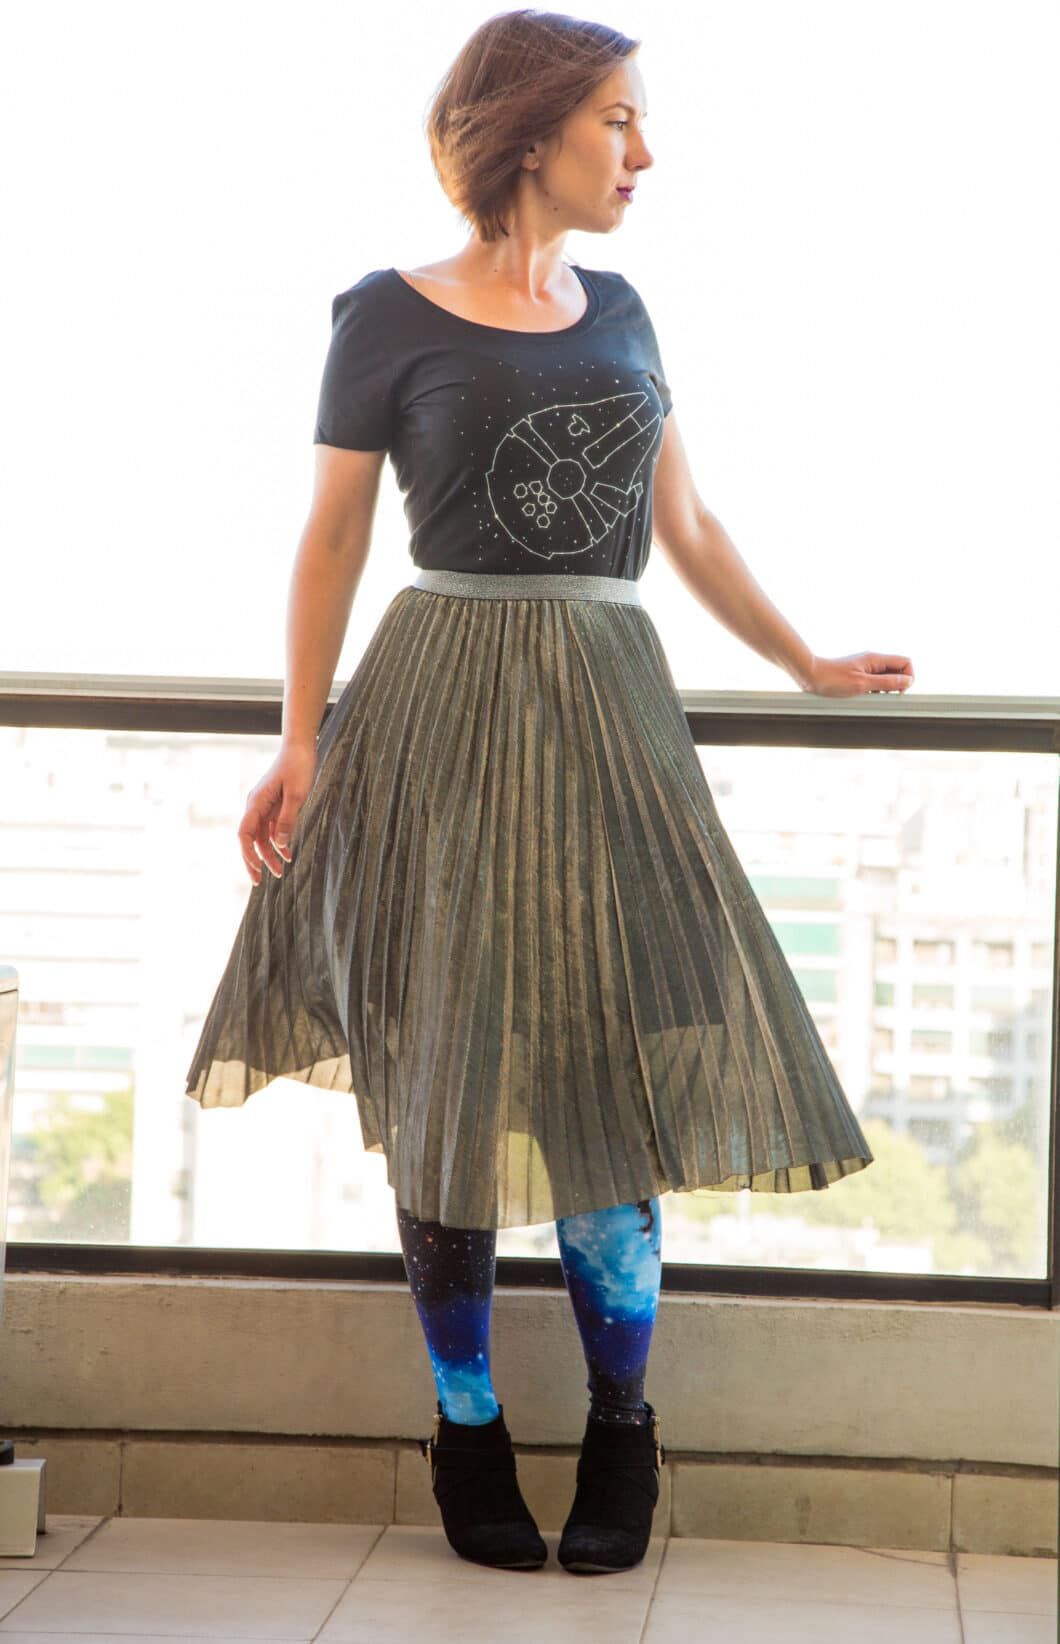 Radish Apparel Millennium Falcon Shirt + Metallic Skirt + Galaxy Leggings